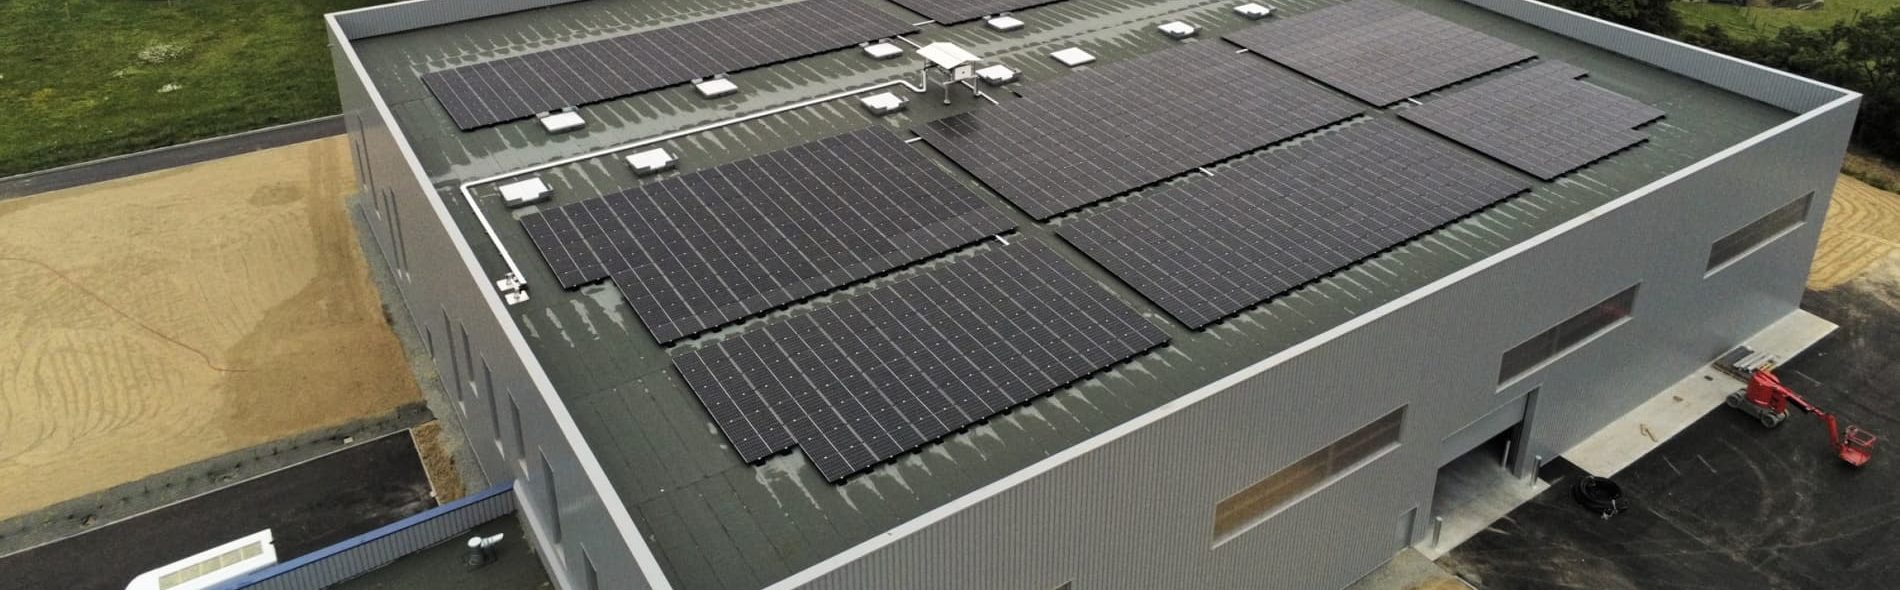 Centrale solaire sur toiture plate